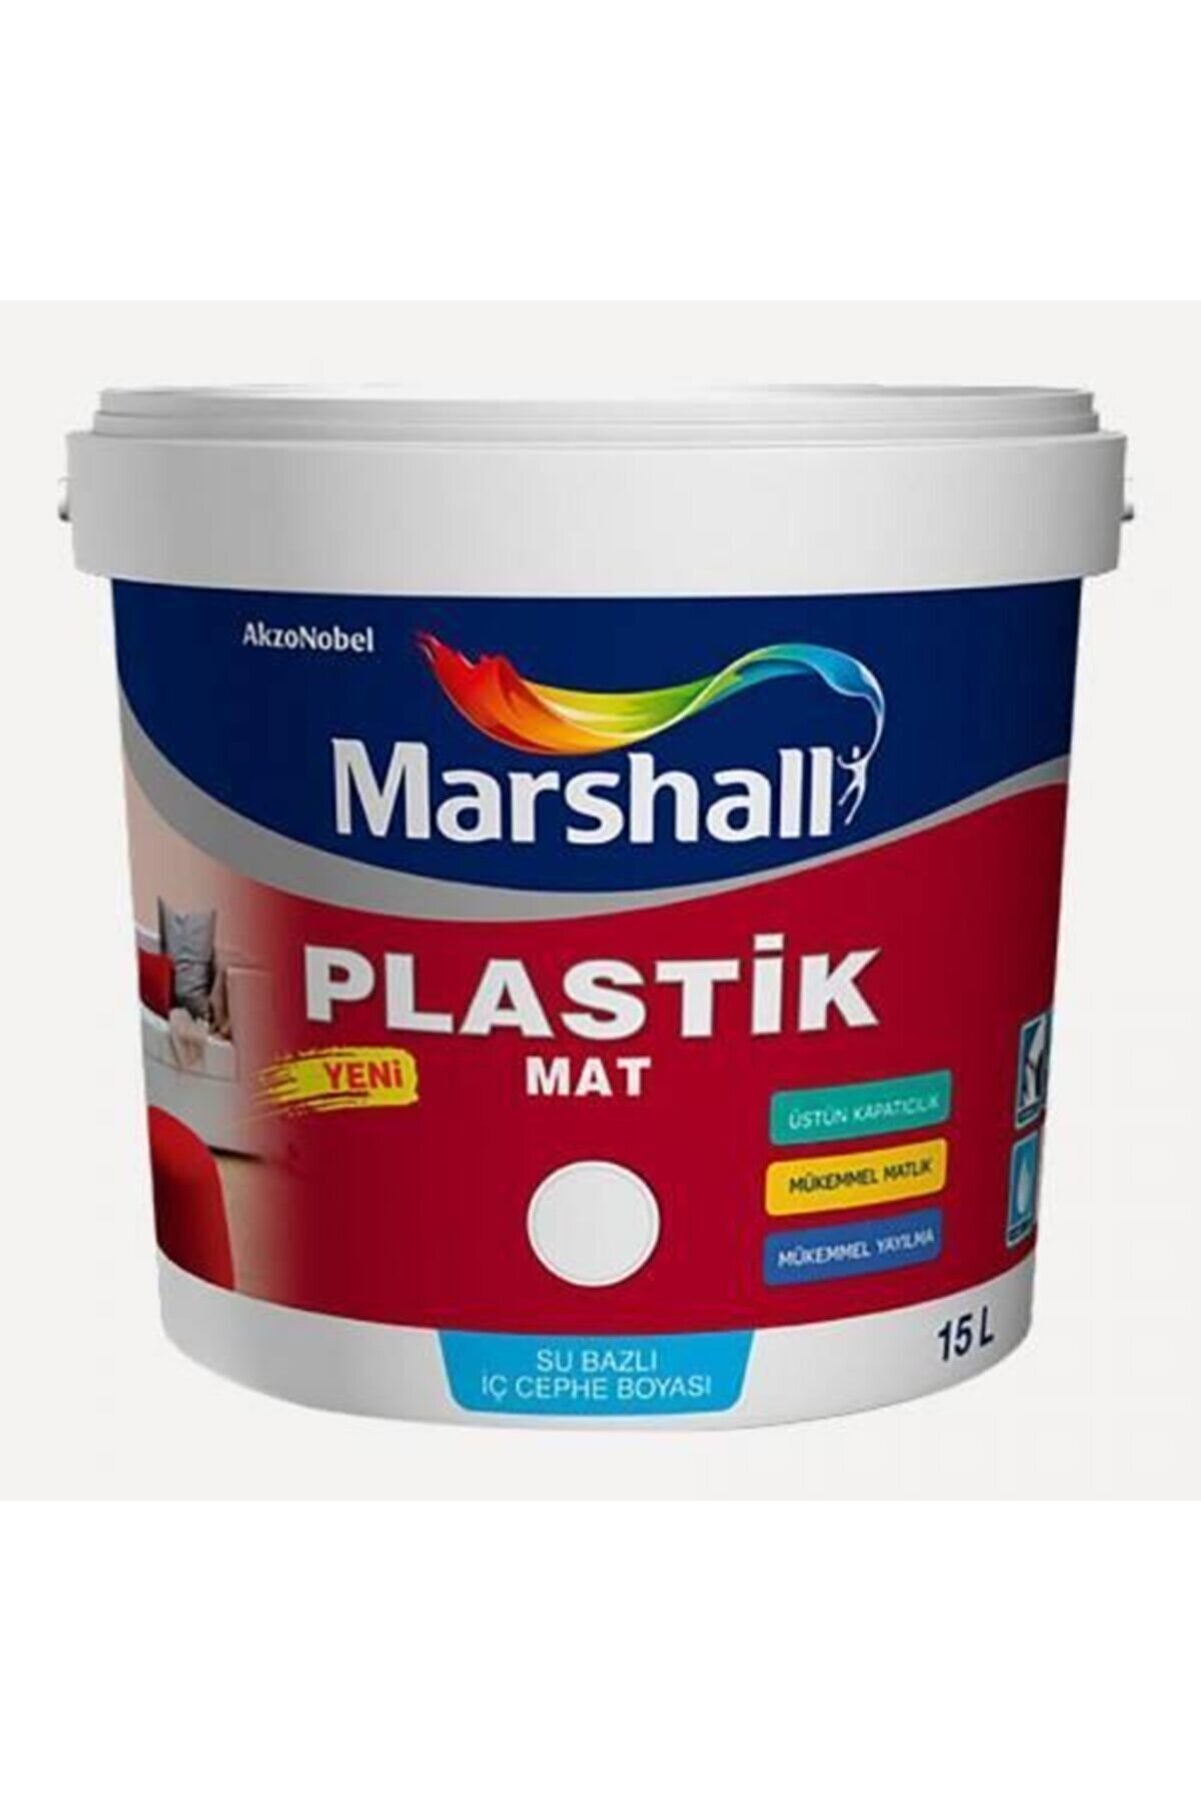 Marshall Plastik Silinebilir Iç Cephe Boyası 15 Lt